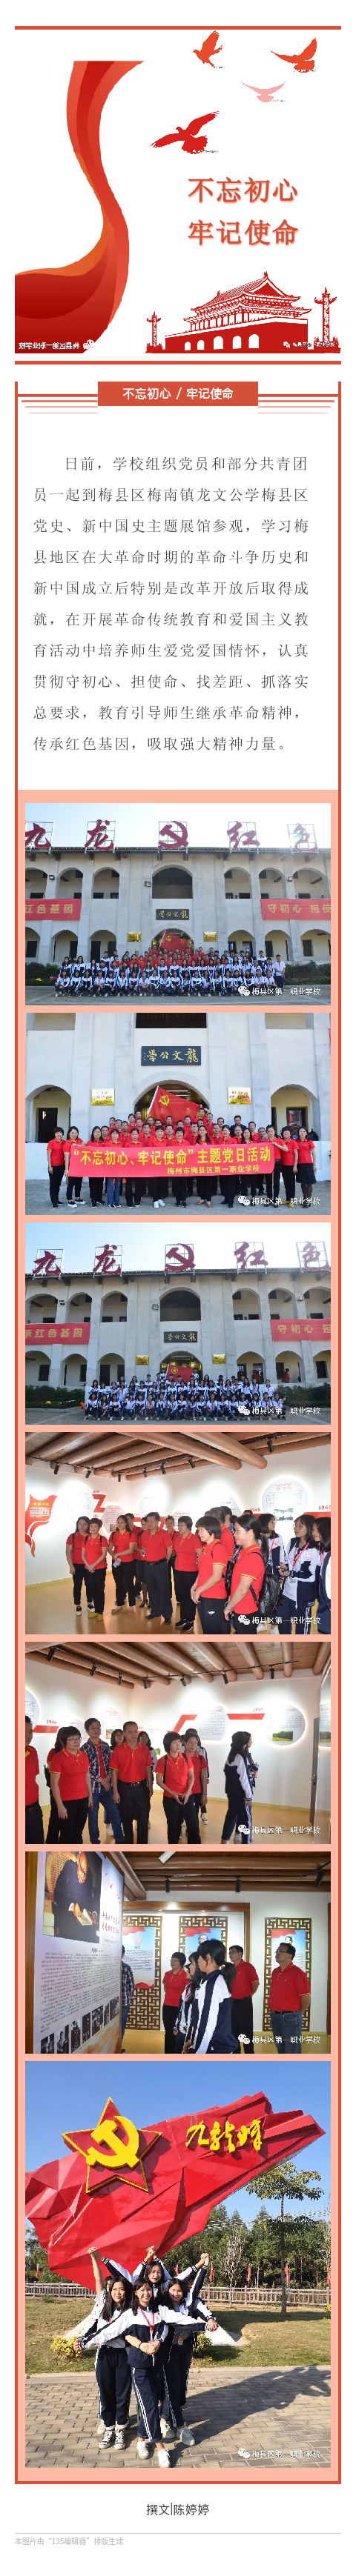 梅县区第一职业学校组织党员和共青团员到梅县区党史、新中国史主题展馆开展主题党日活动